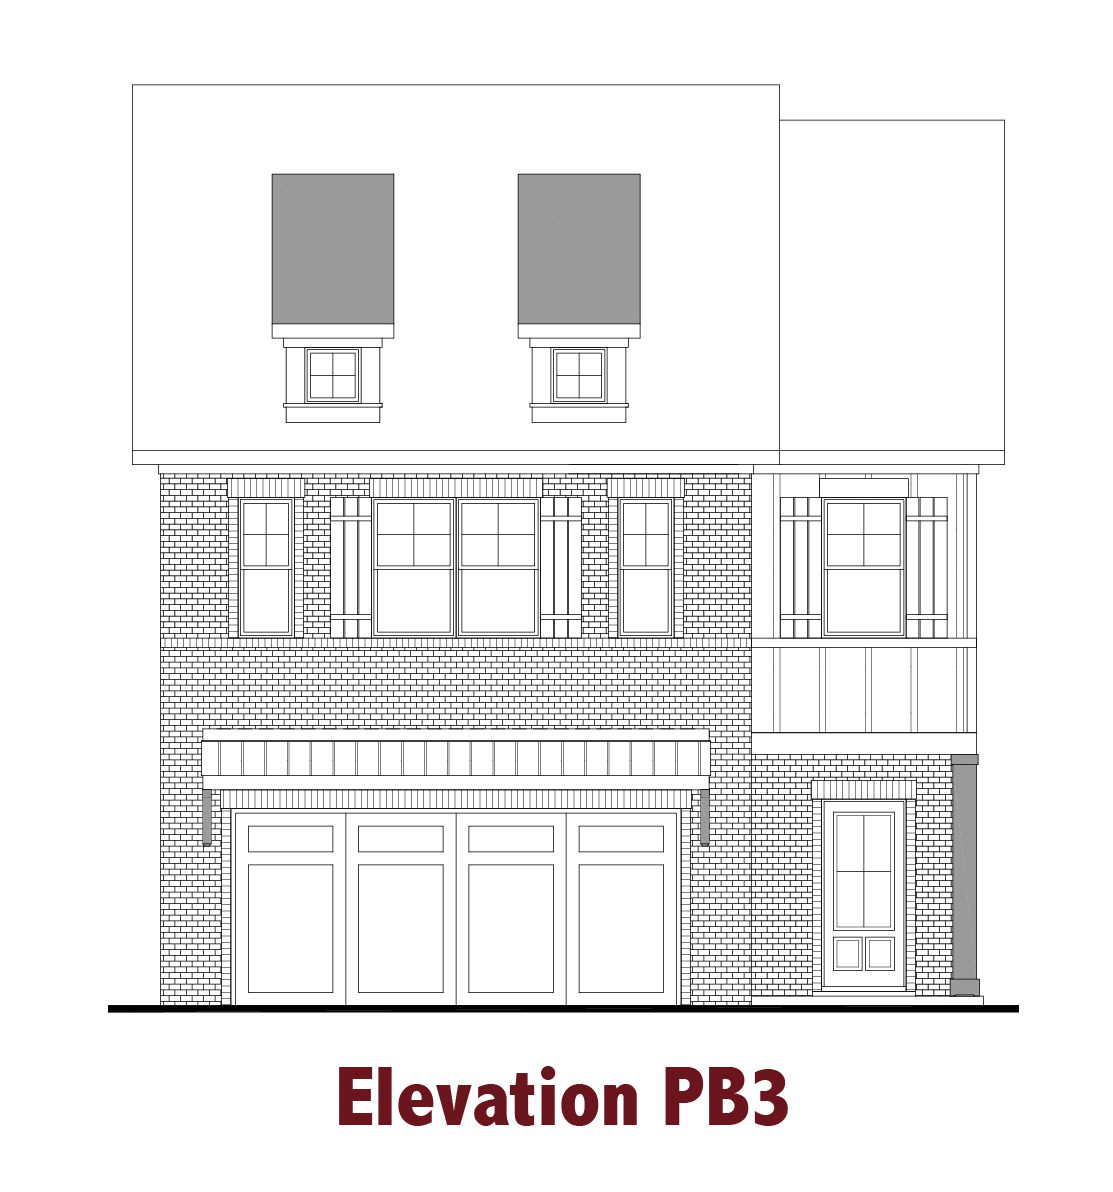 Pembroke elevations Image